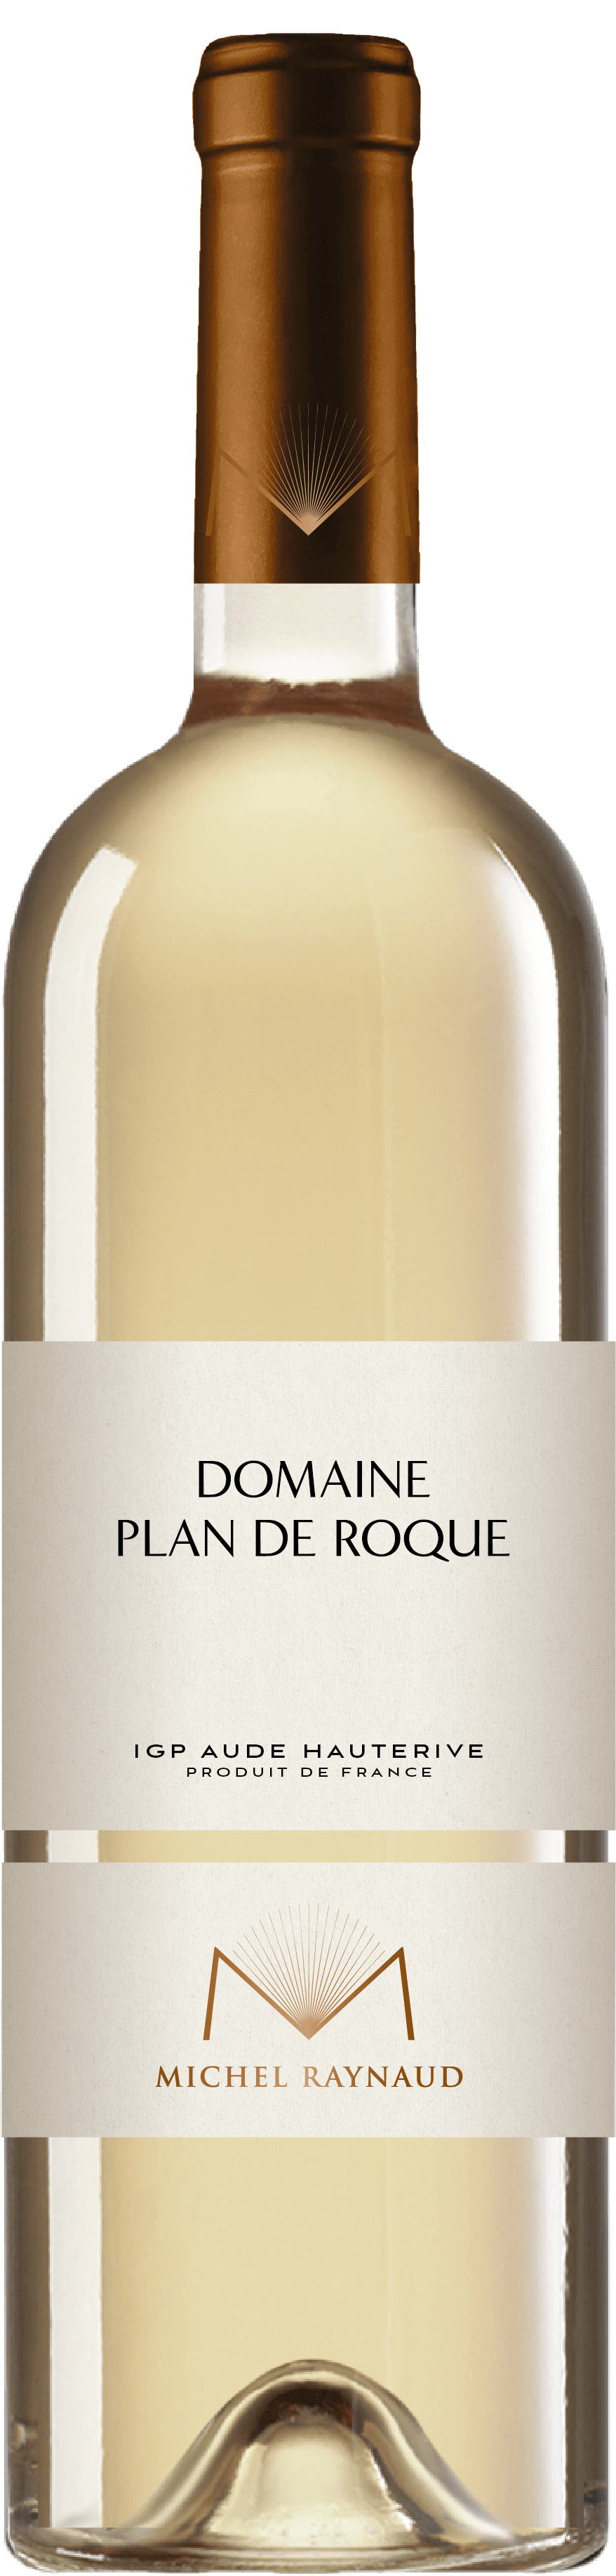 Domaine Plan de Roque – Aude Hauterive Rosé - Michel Raynaud